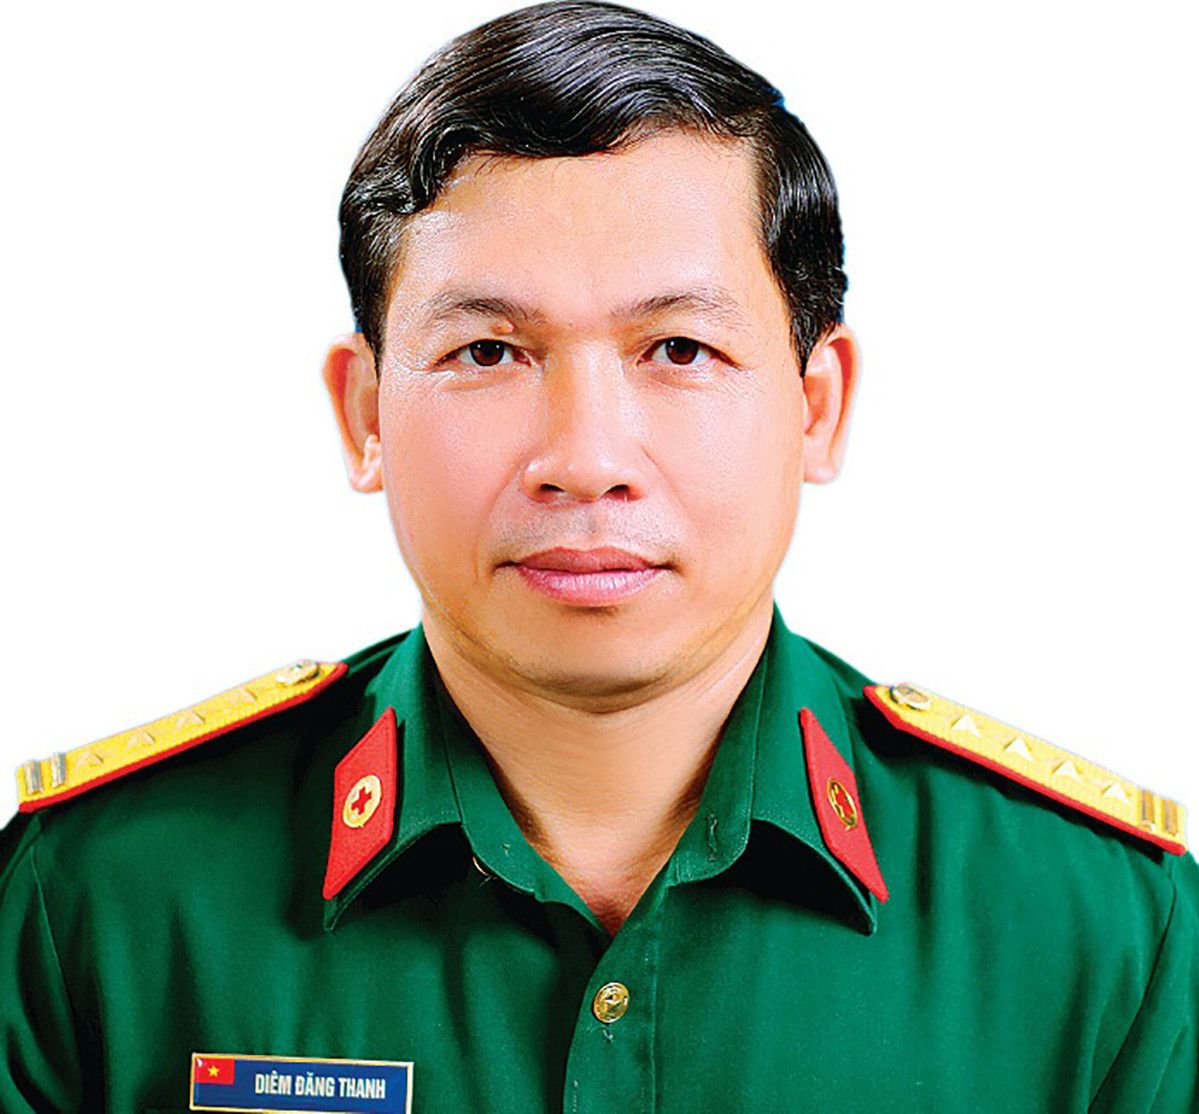 Đại tá Diêm Đăng Thanh. Ảnh: Bệnh viện Quân y 110